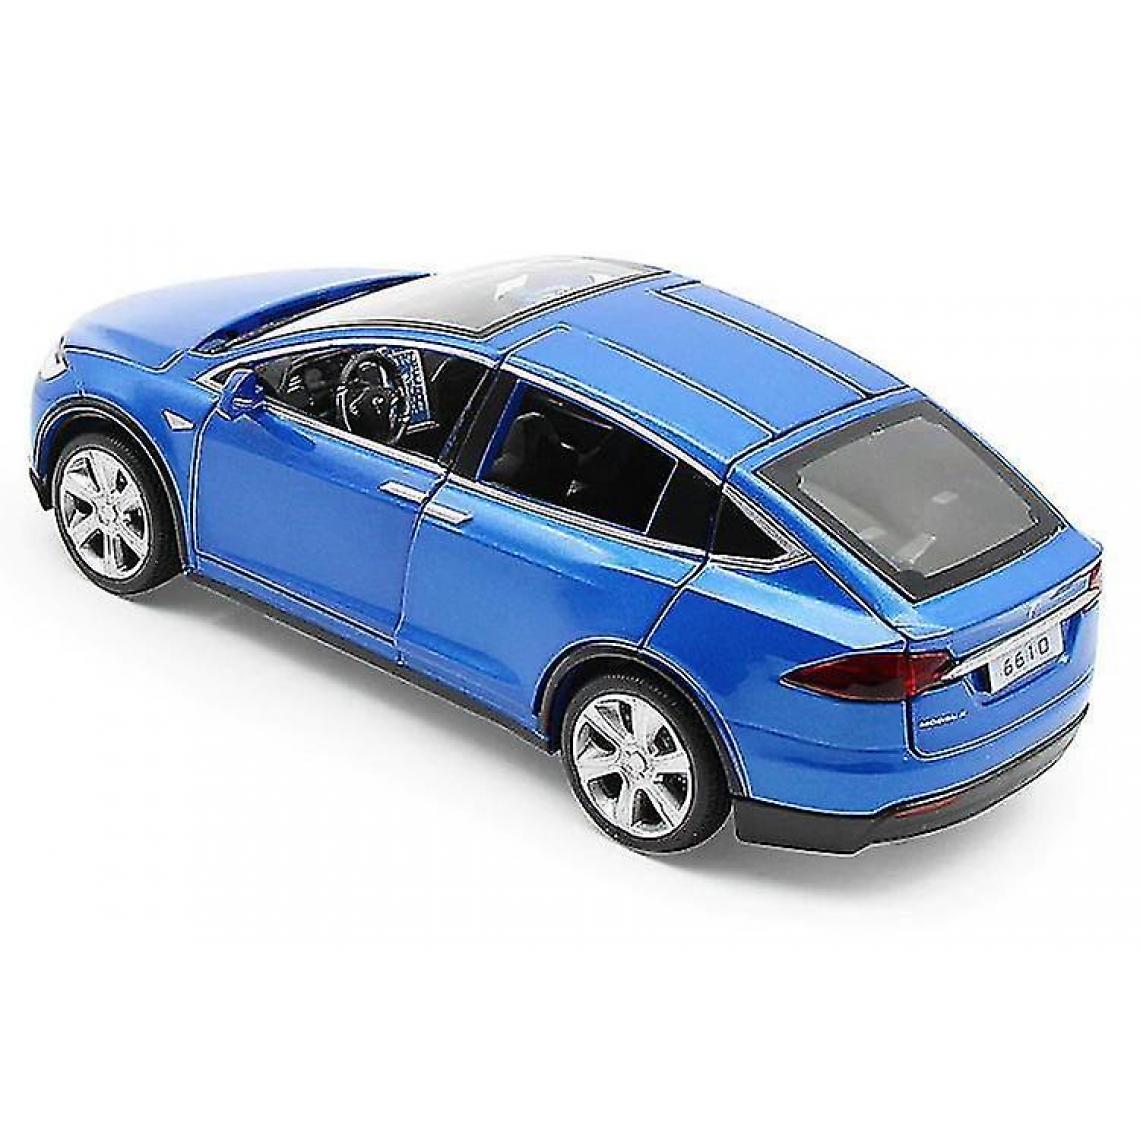 Universal - Véhicule Tesla modèle X90 tire en arrière le jouet de voiture (bleu) - Voitures